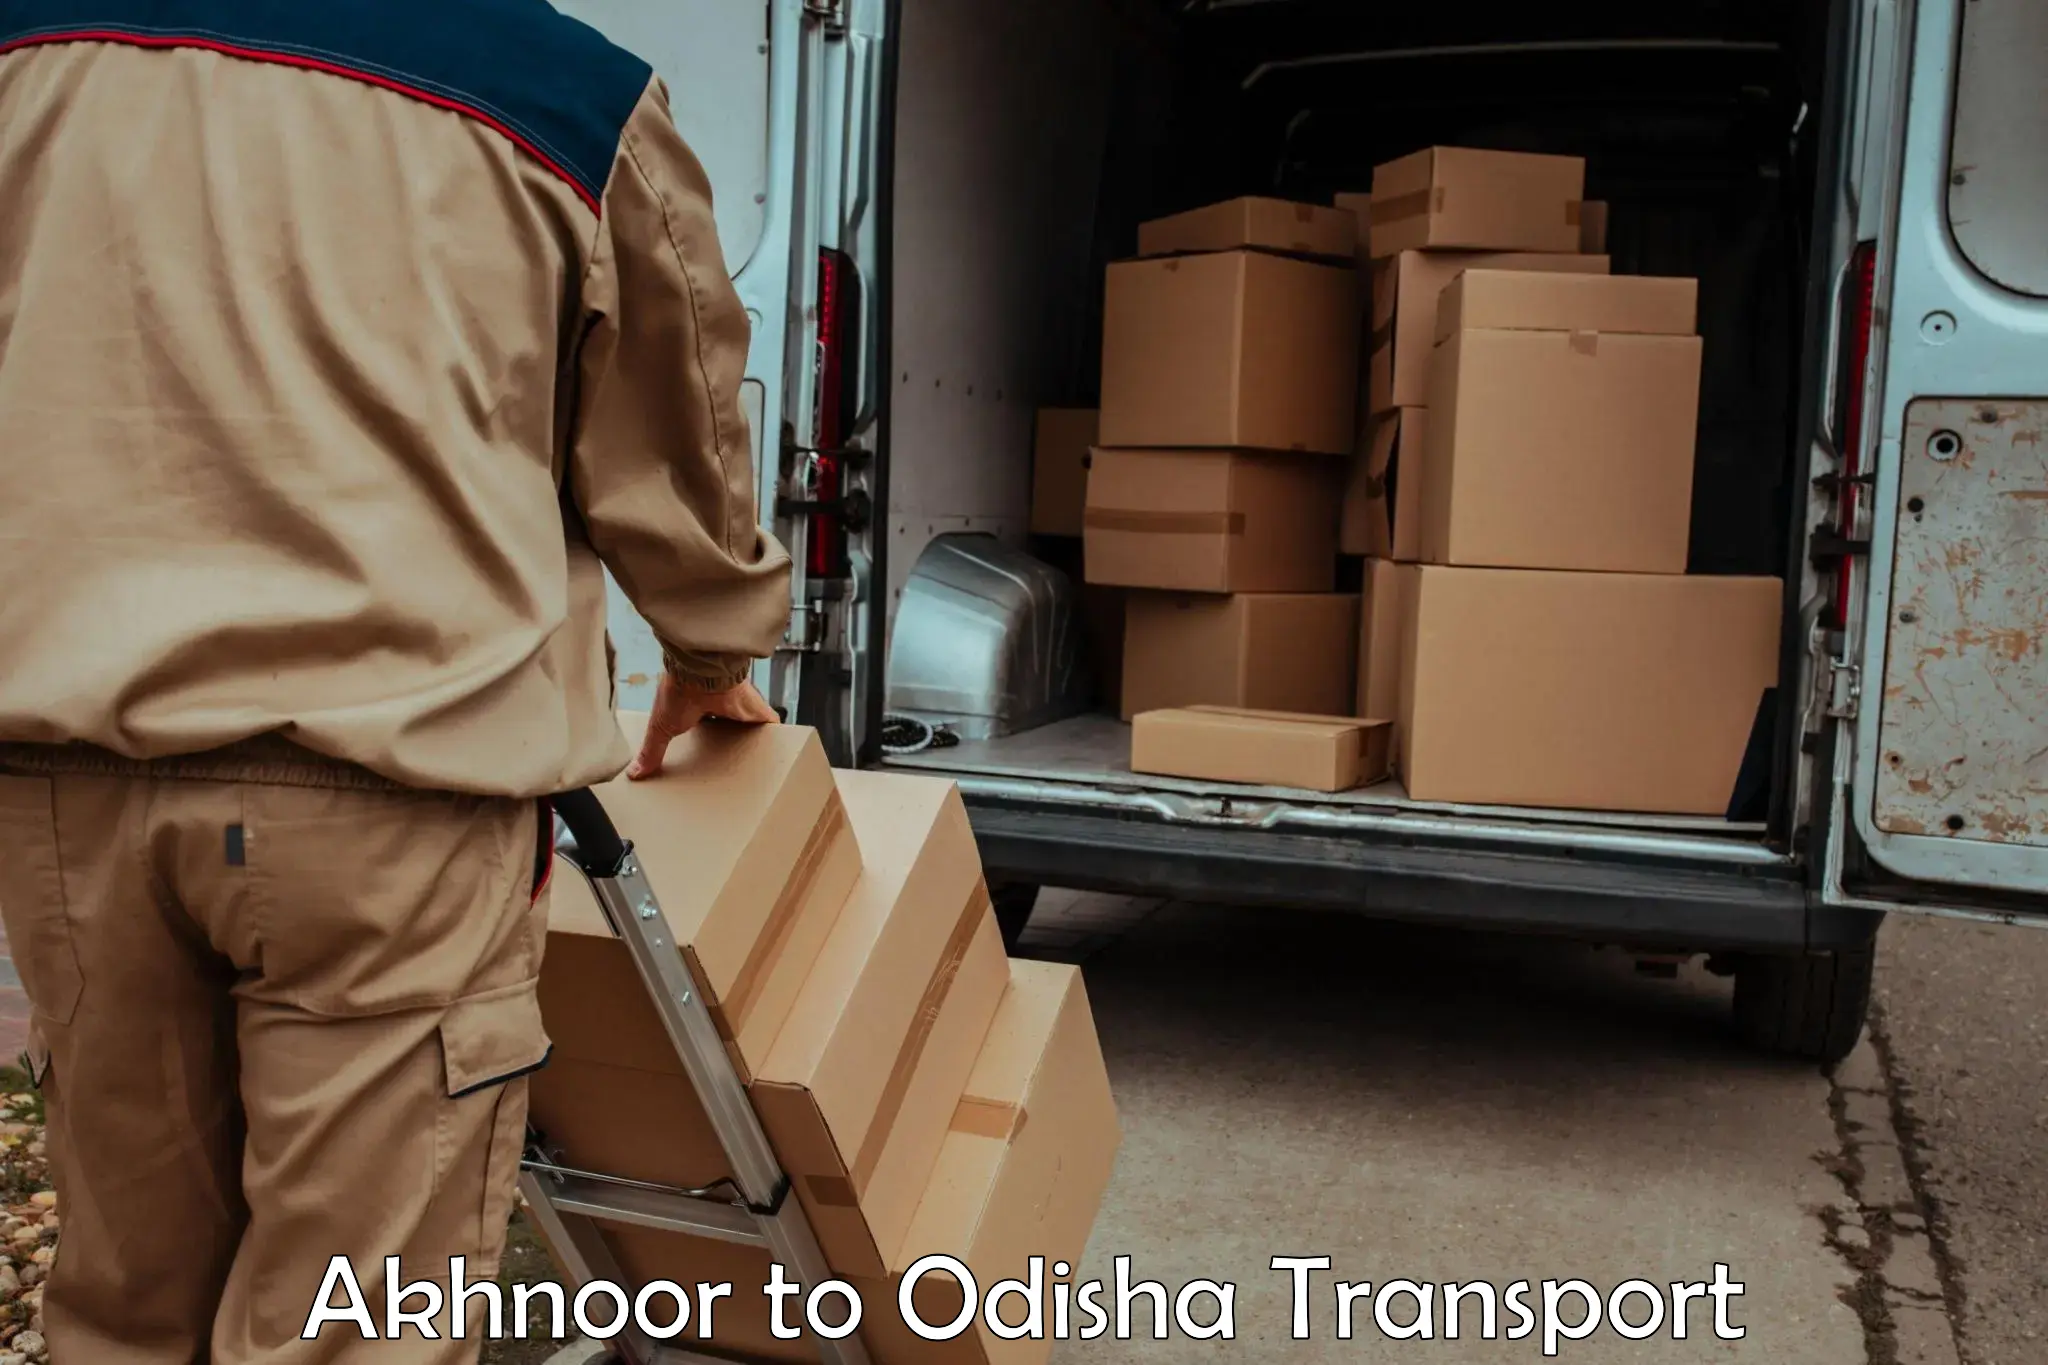 Air freight transport services Akhnoor to Raj Berhampur